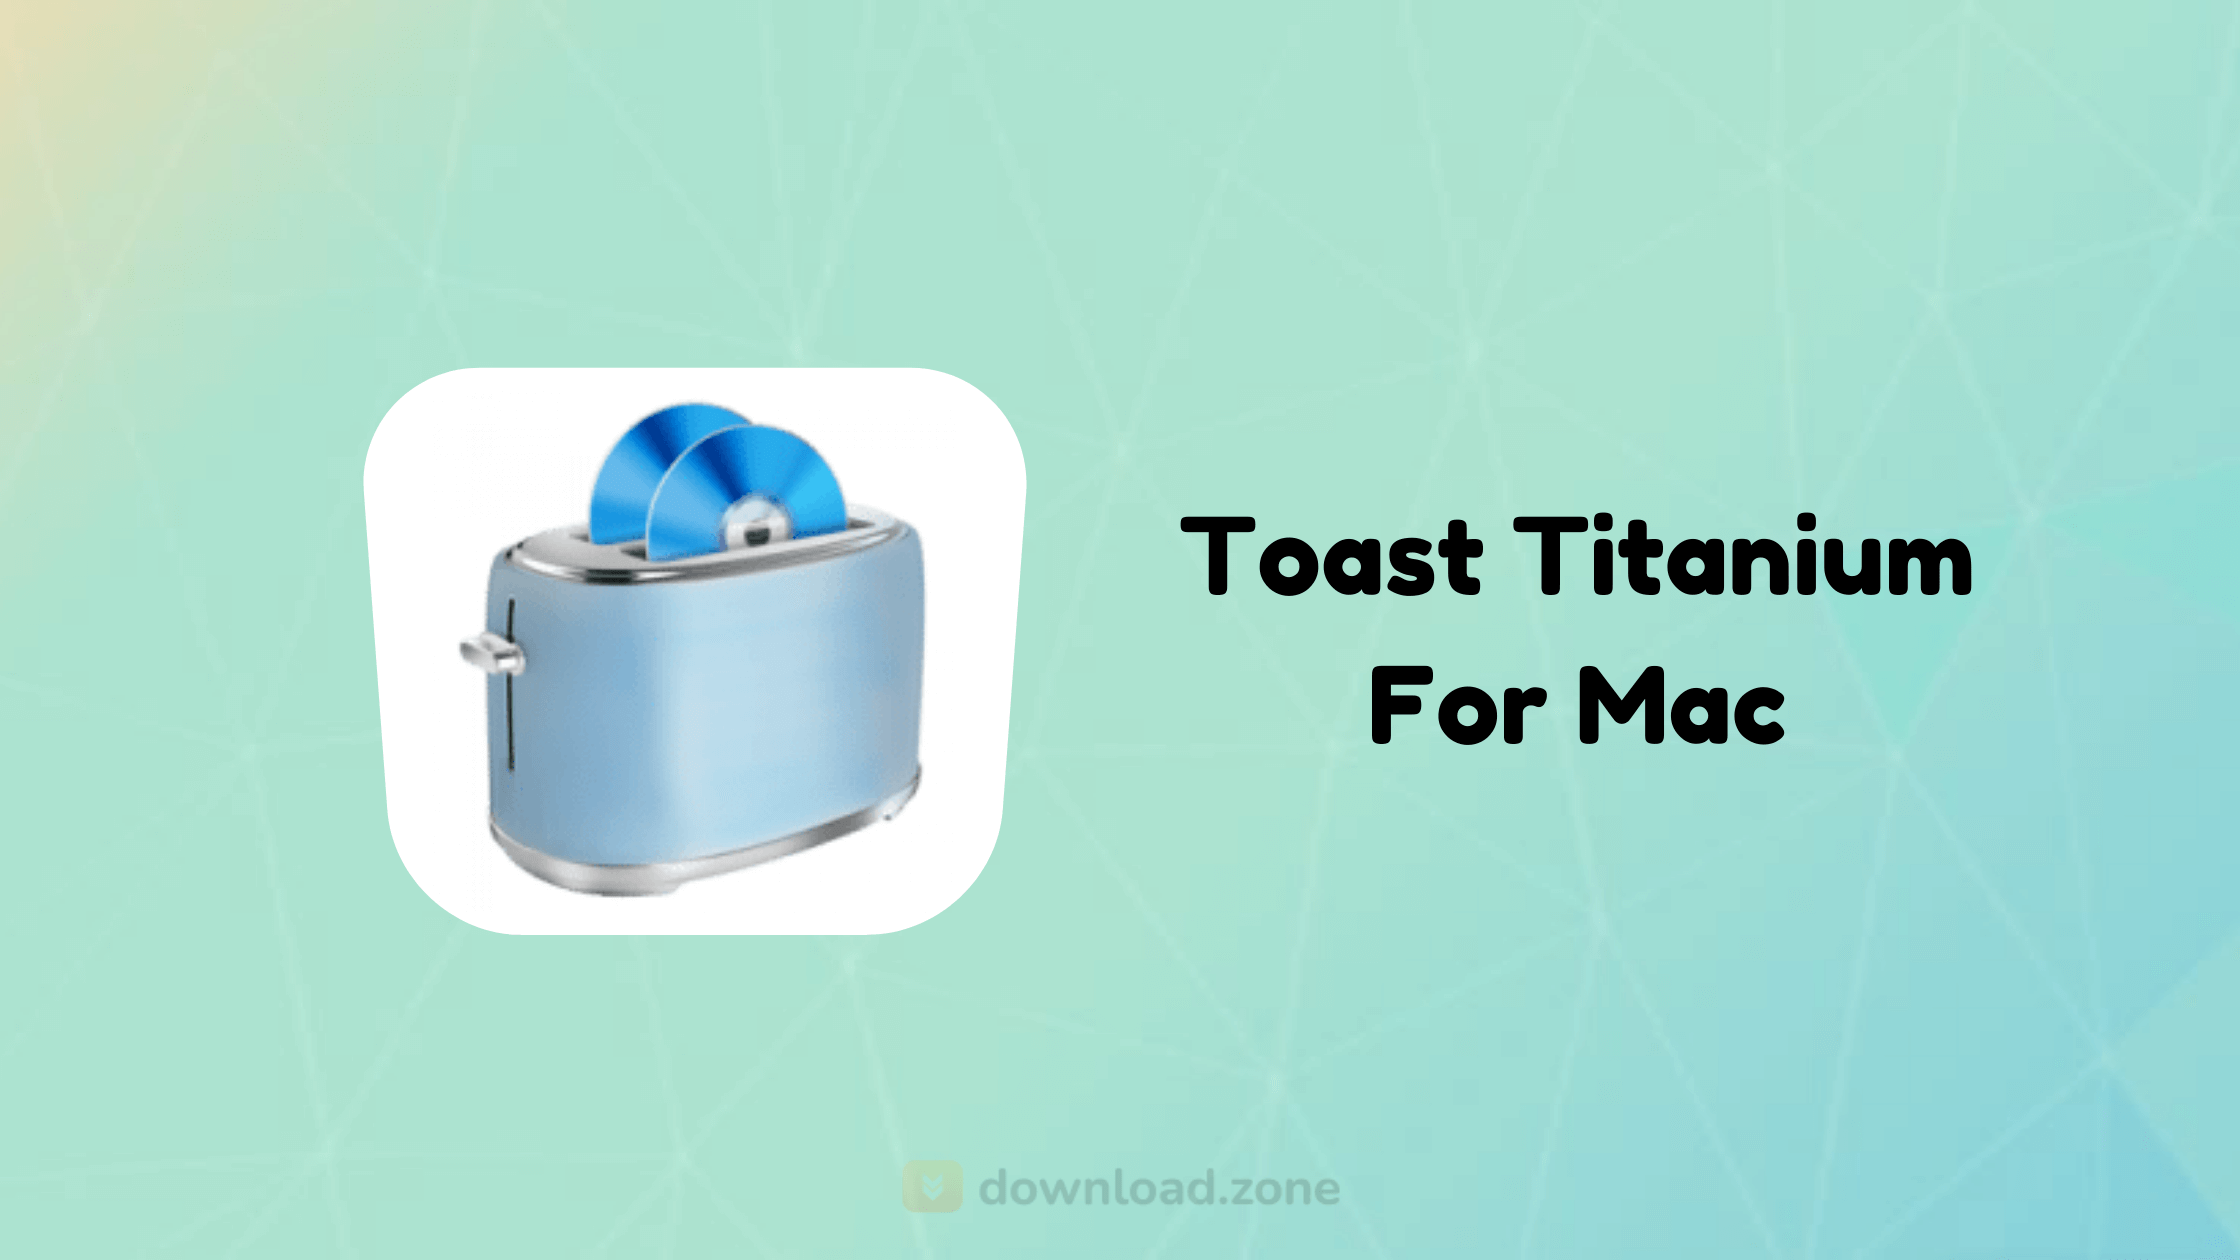 toast 10 titanium mac free download